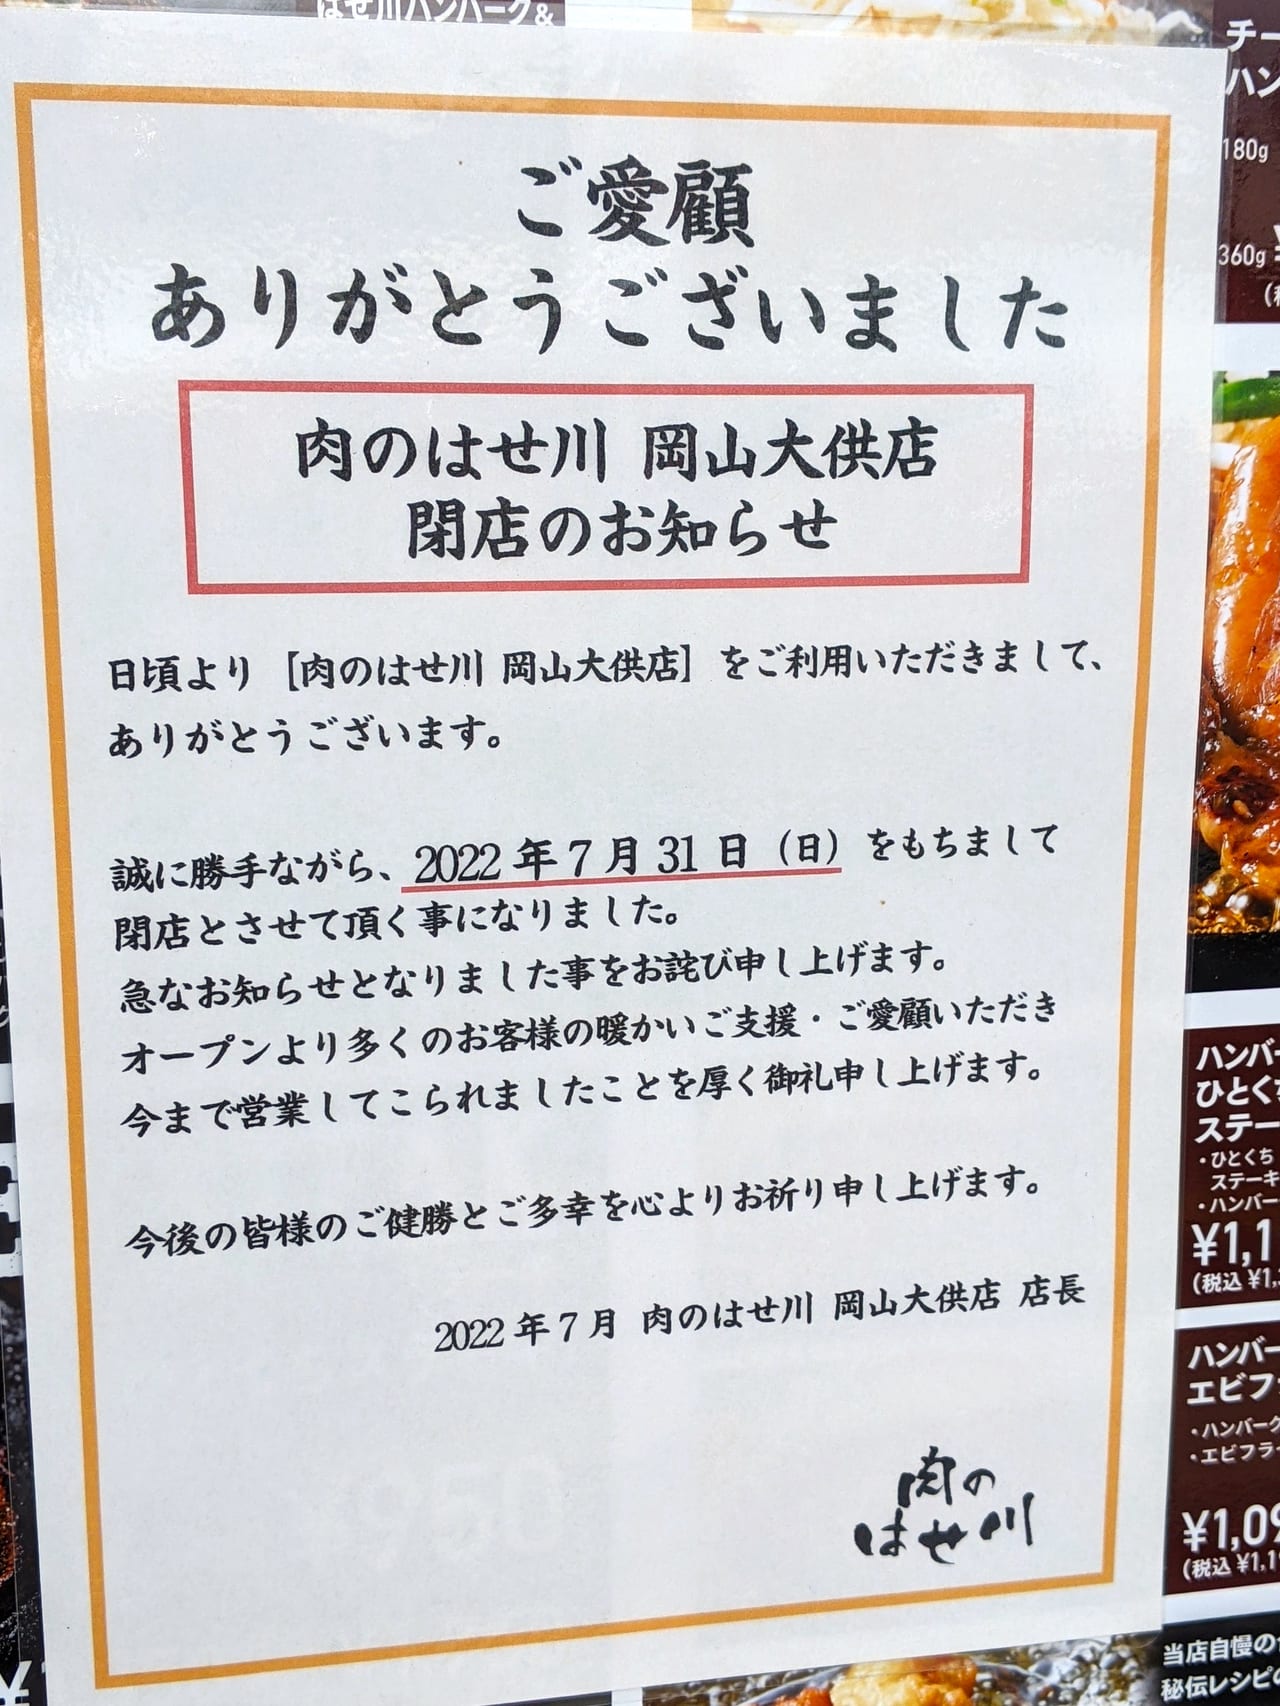 「肉のはせ川 岡山大供店」のお知らせ